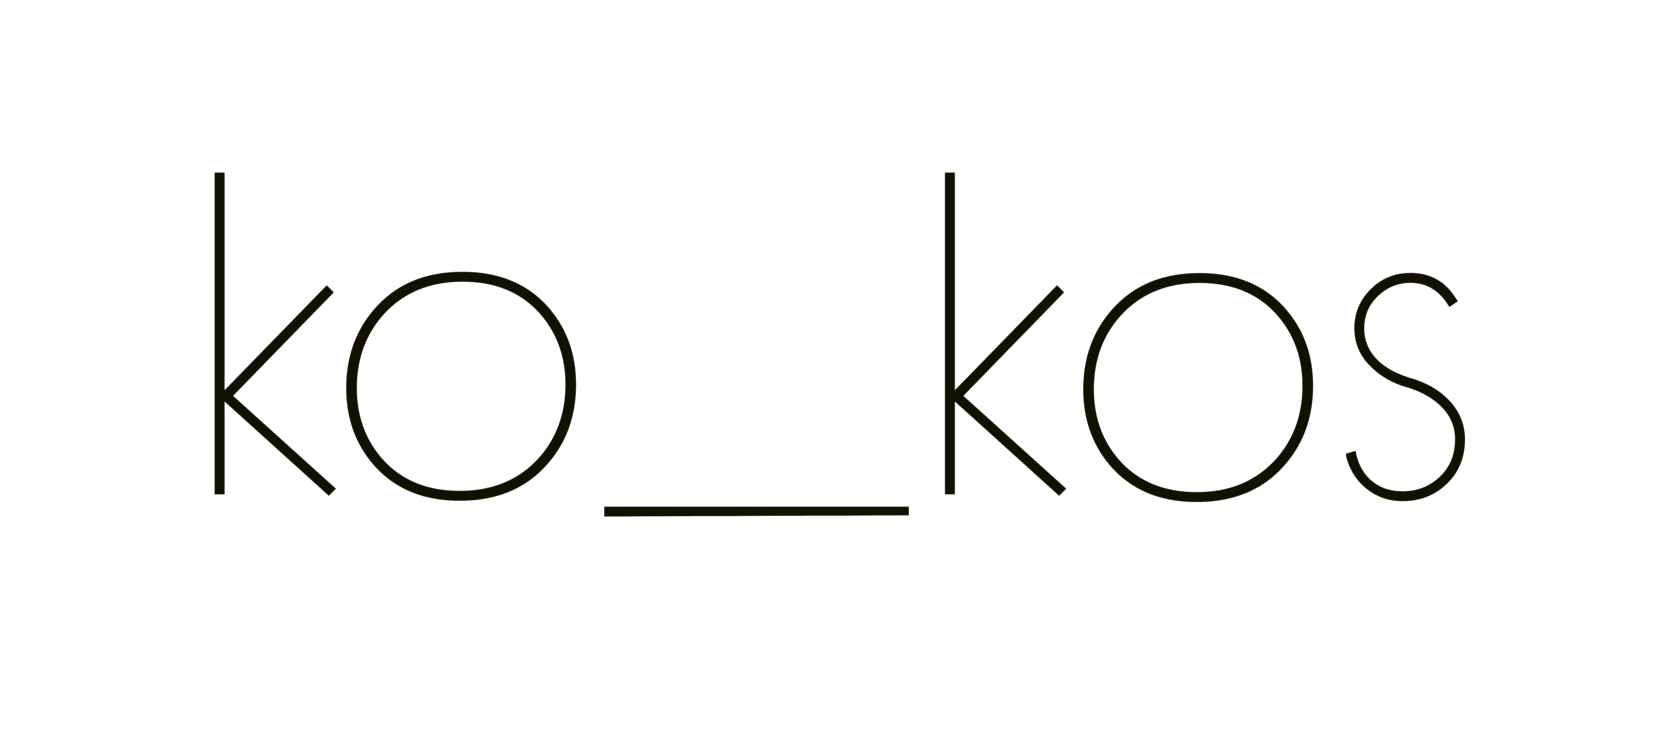  ko_kos 